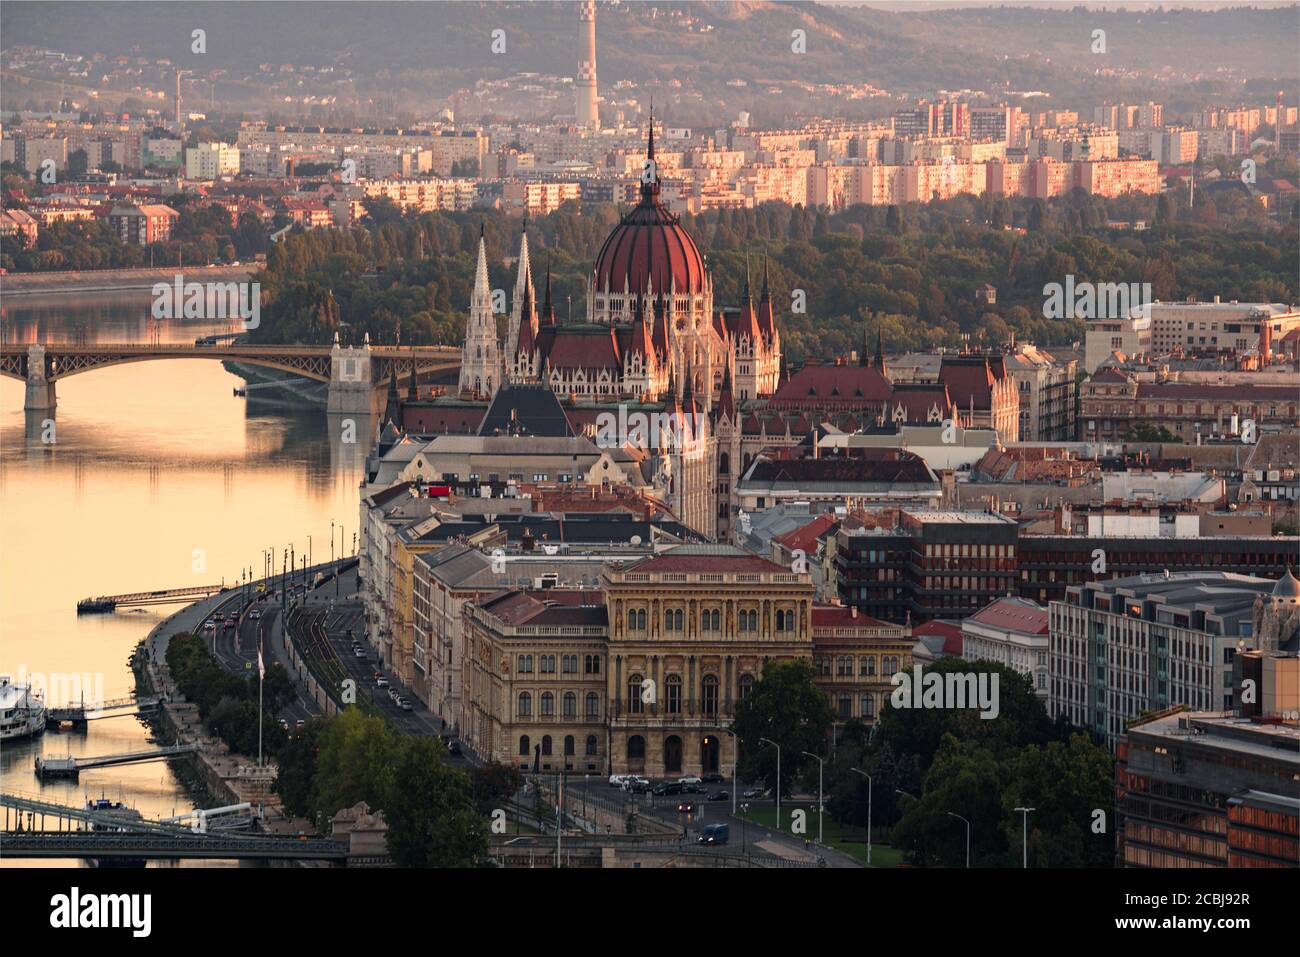 Tolle Aussicht über das ungarische Parlament und Budapest Stadt. Das Gebäude der Ungarischen Akademie der Wissenschaften im Vordergrund. Margaretenbrücke und Insel o Stockfoto